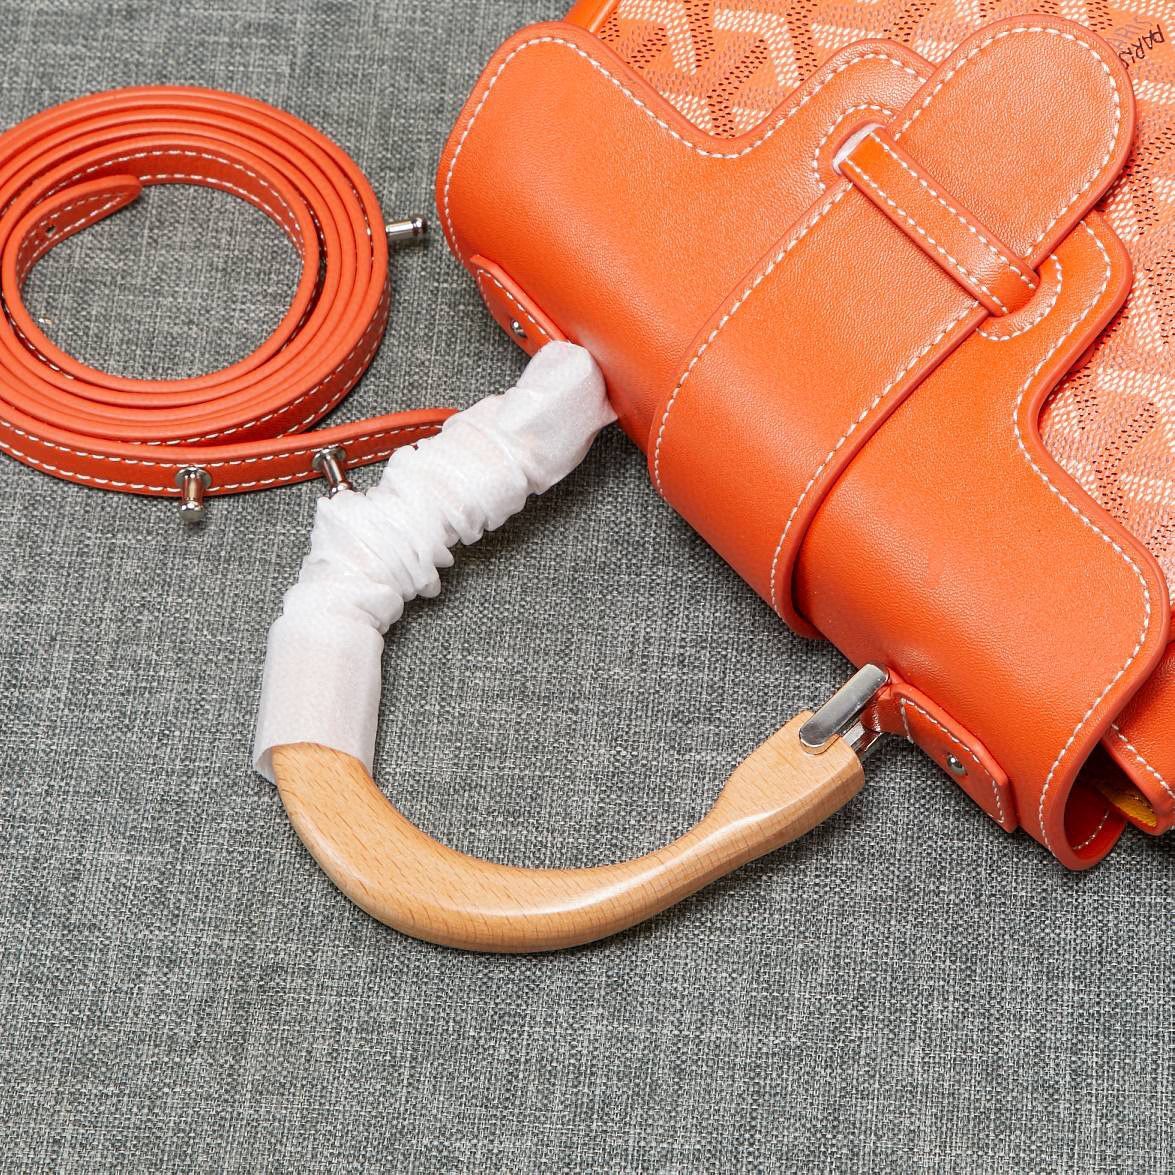 Goyard Y Doodling Calfskin Leather Tote Bag 99588 Orange